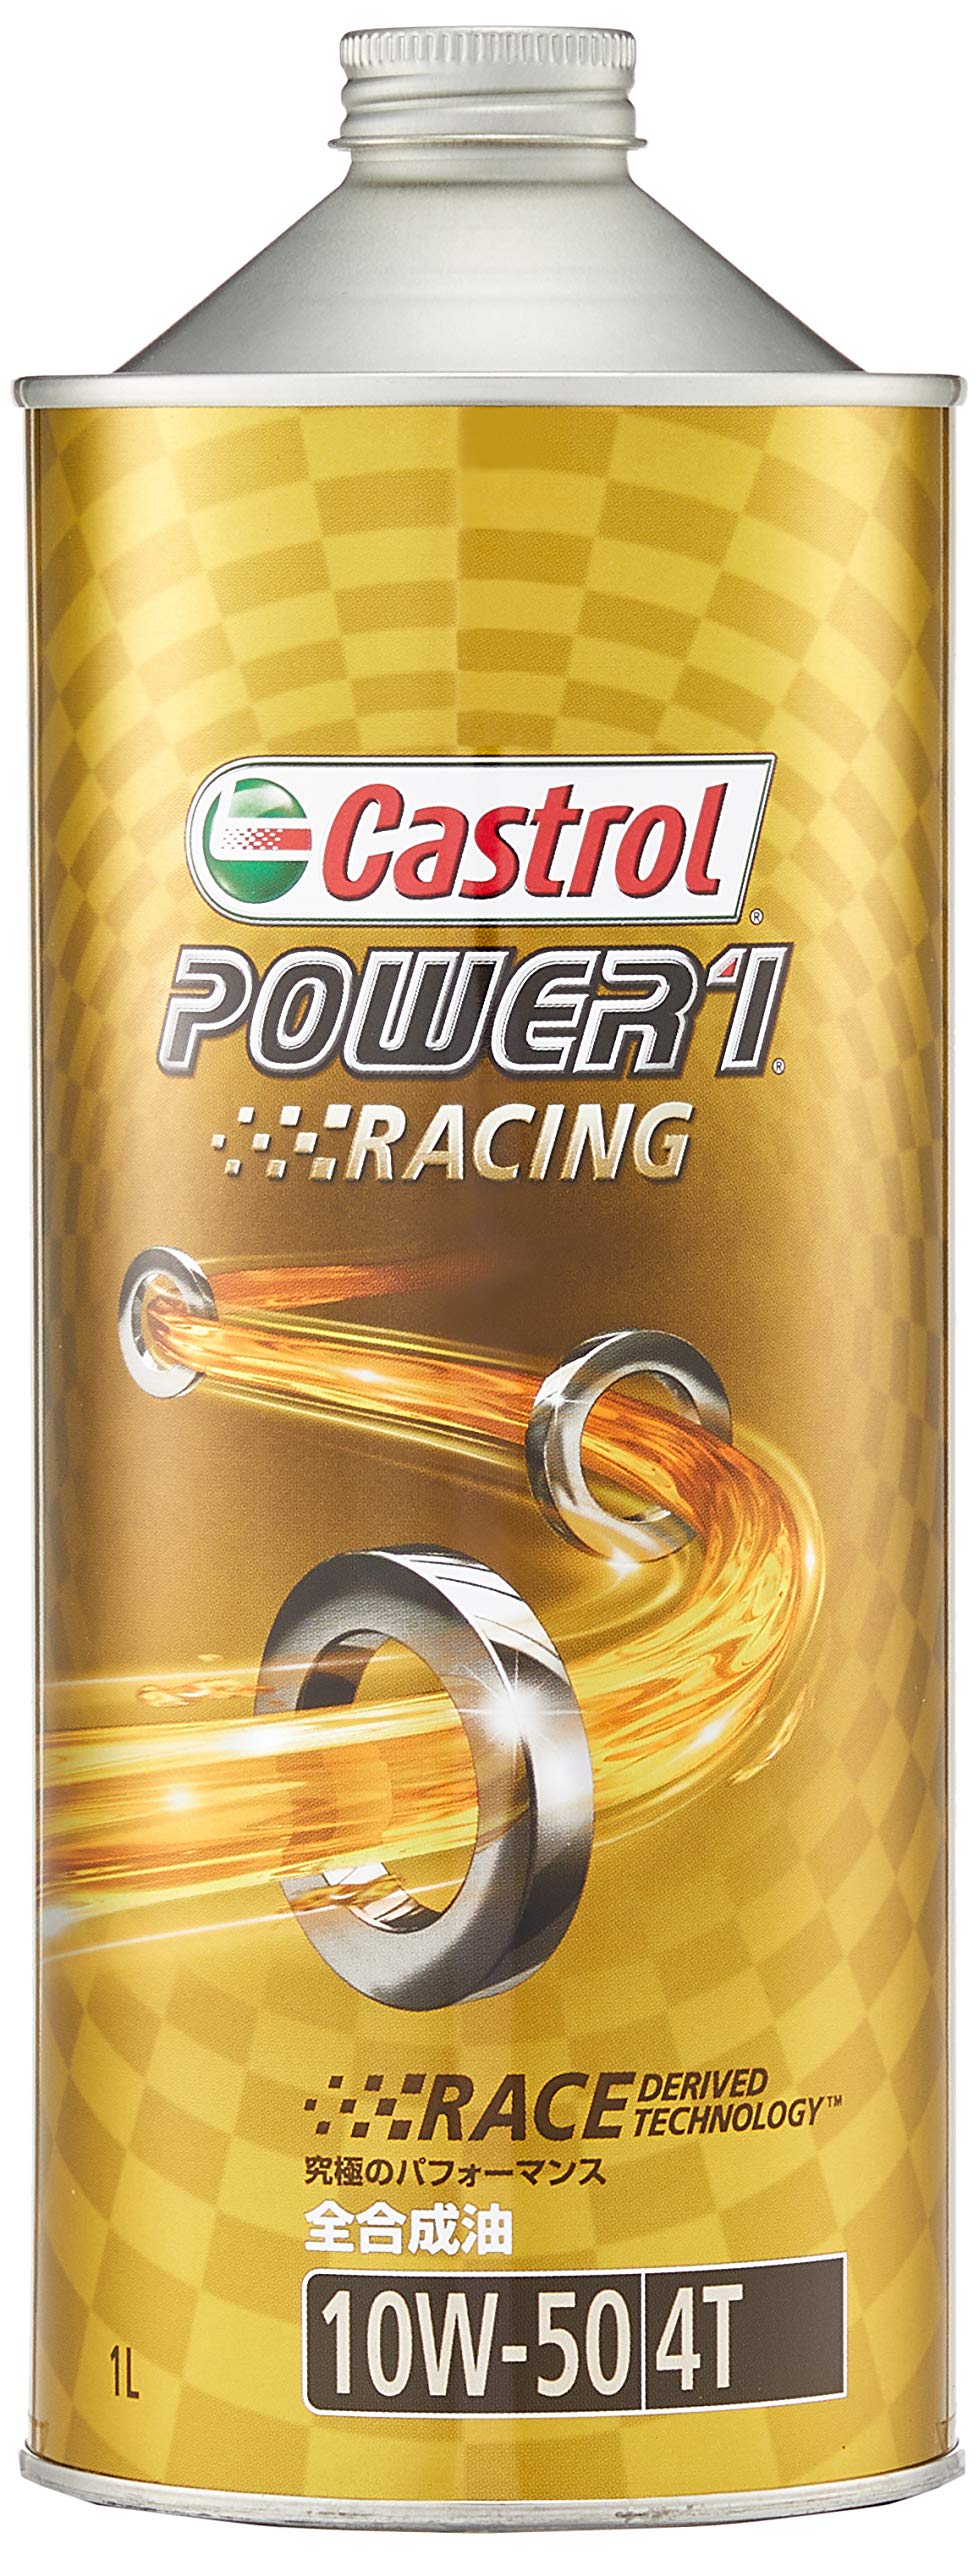 カストロール(Castrol) エンジンオイル POWER1 RACING 4T 10W-50 1L 二輪車4サイクルエンジン用全合成油 MA Castrol